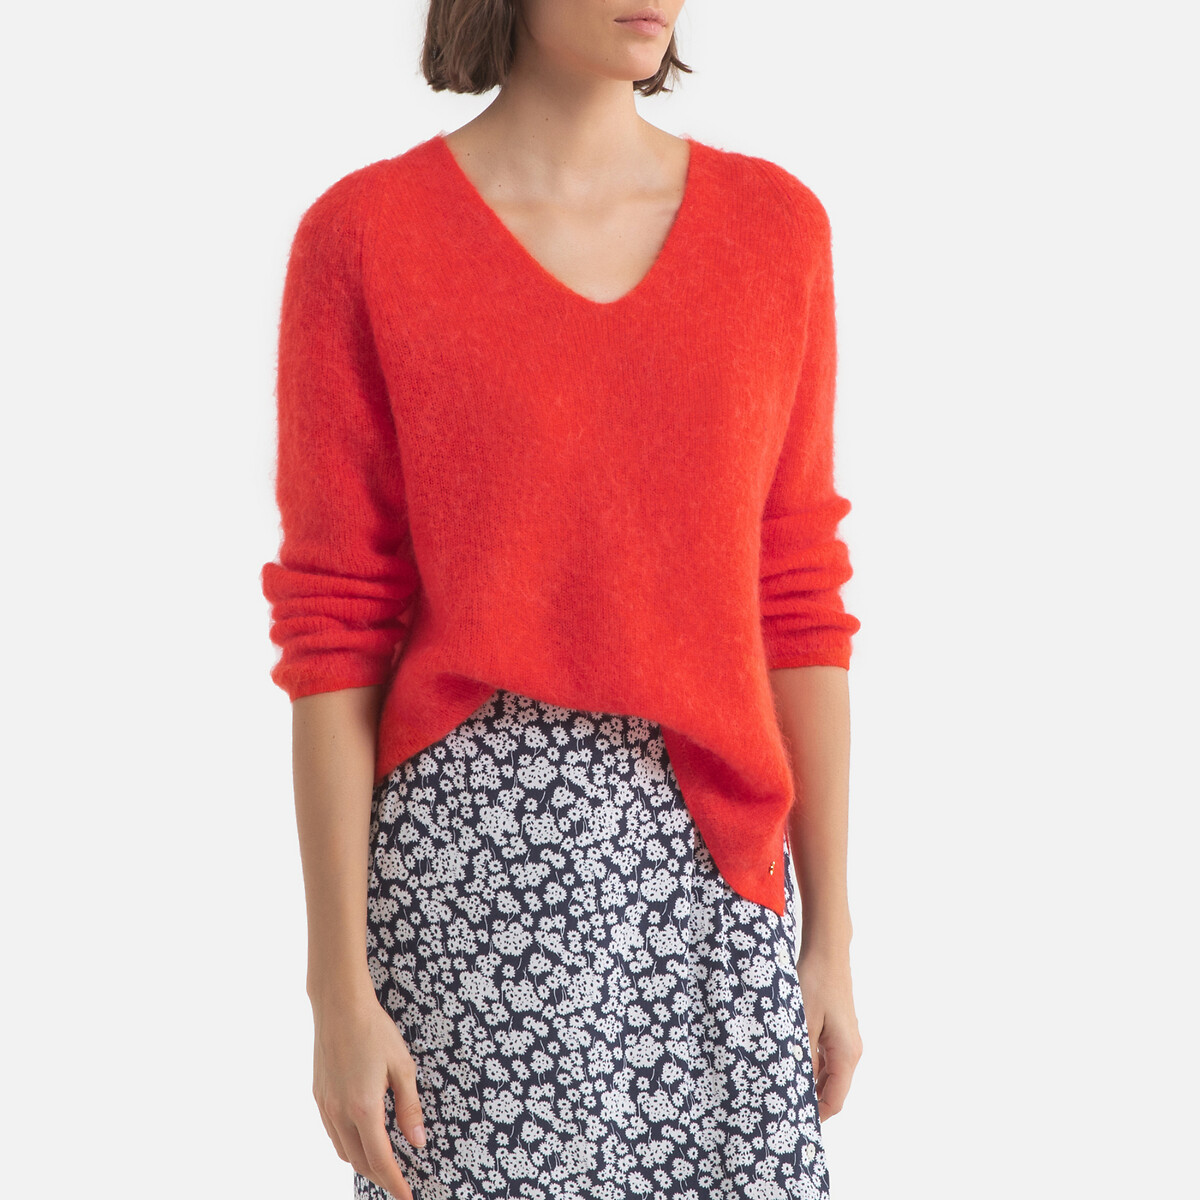 Пуловер LaRedoute С v-образным вырезом из плотного трикотажа ALTEA 0(XS) красный, размер 0(XS) С v-образным вырезом из плотного трикотажа ALTEA 0(XS) красный - фото 1